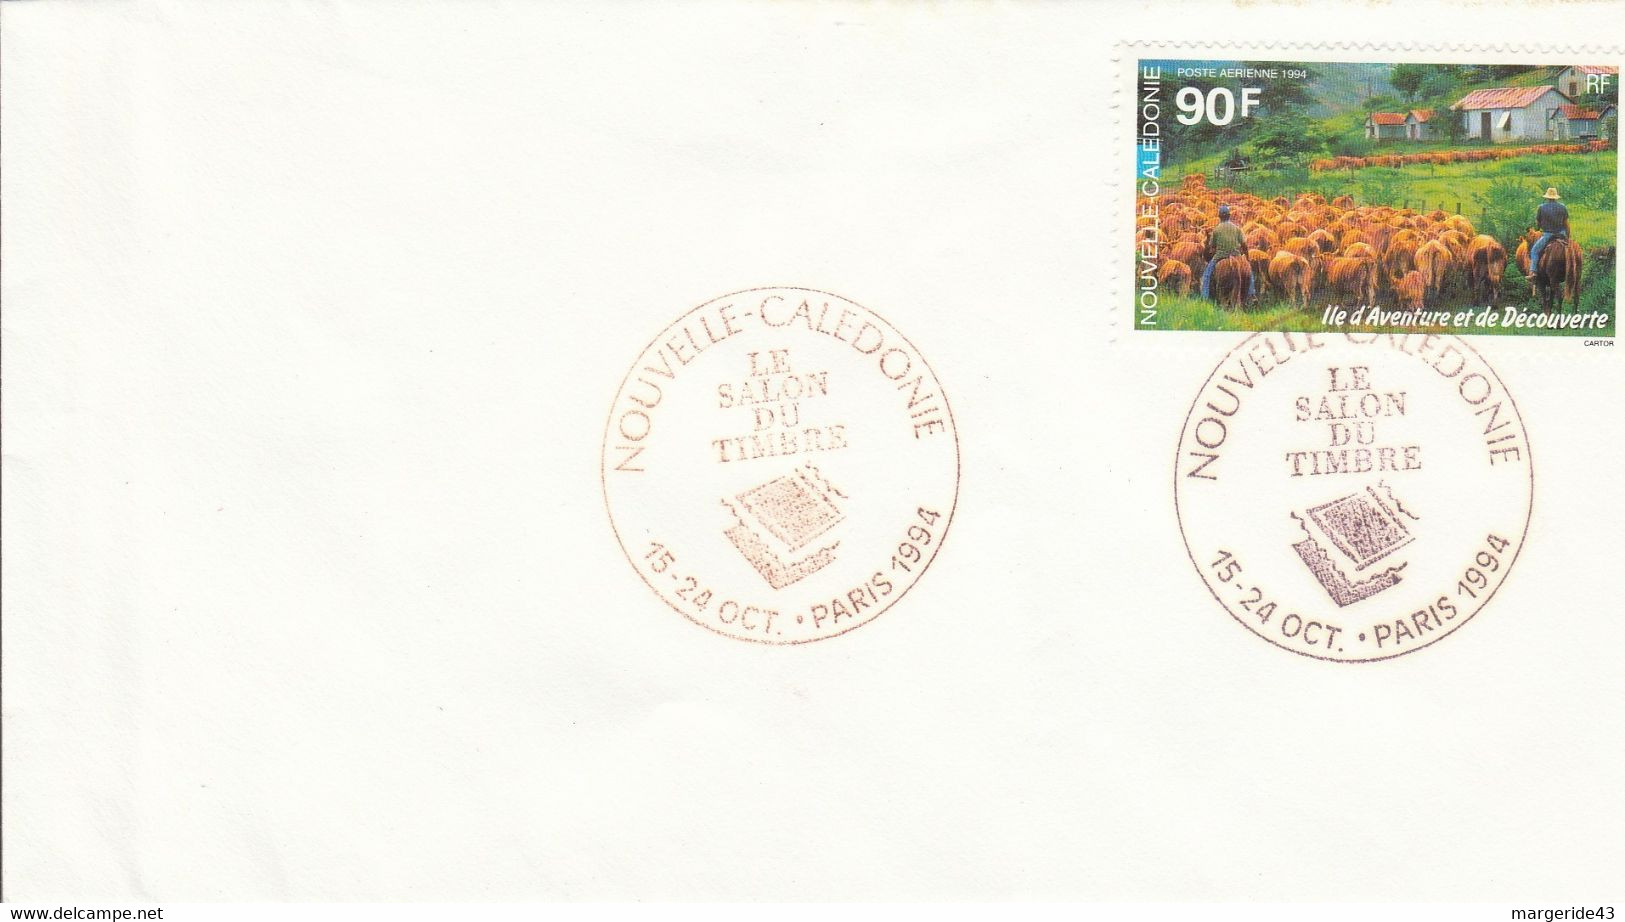 NOUVELLE CALEDONIE PRESENTE AU SALON DU TIMBRE PARIS 1994 - Cartas & Documentos